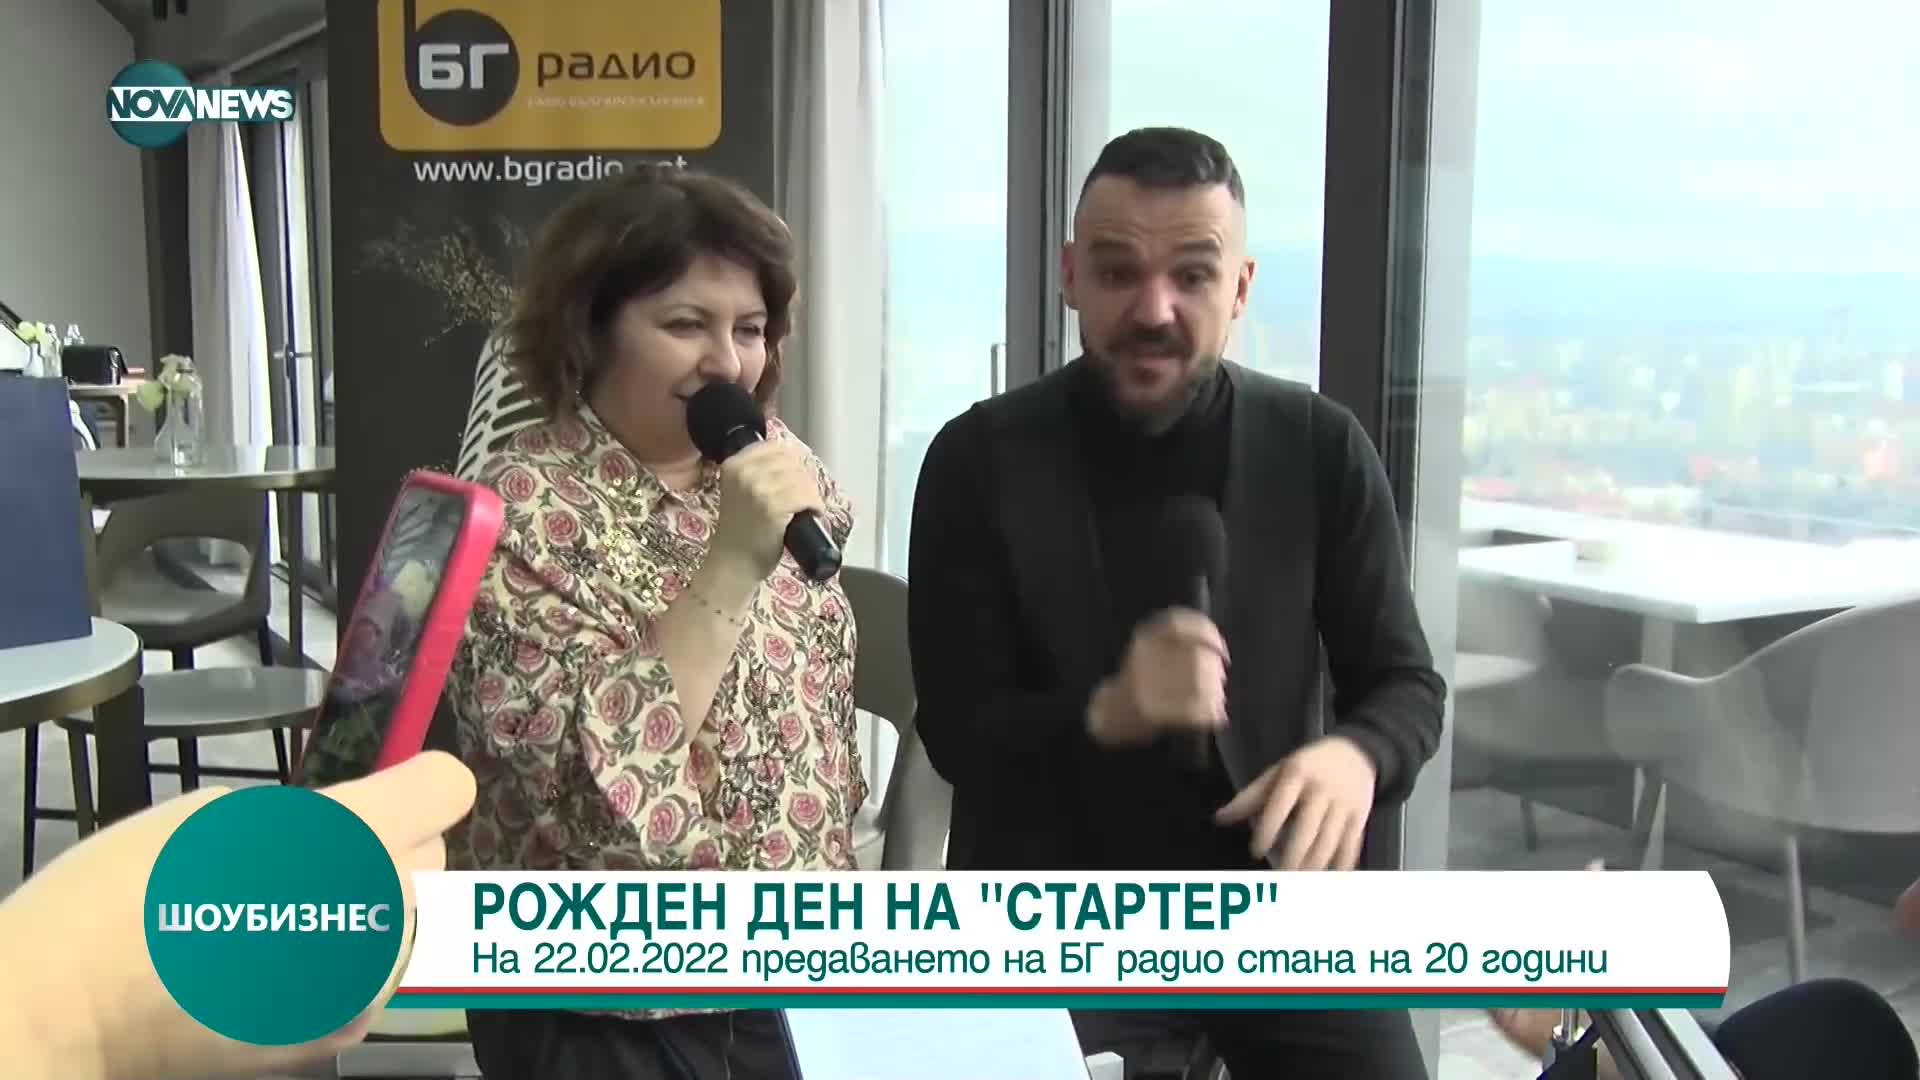 Сутрешното предаване на БГ Радио „Стартер със Симо и Богдана“ отпразнува своя 20-ти рожден